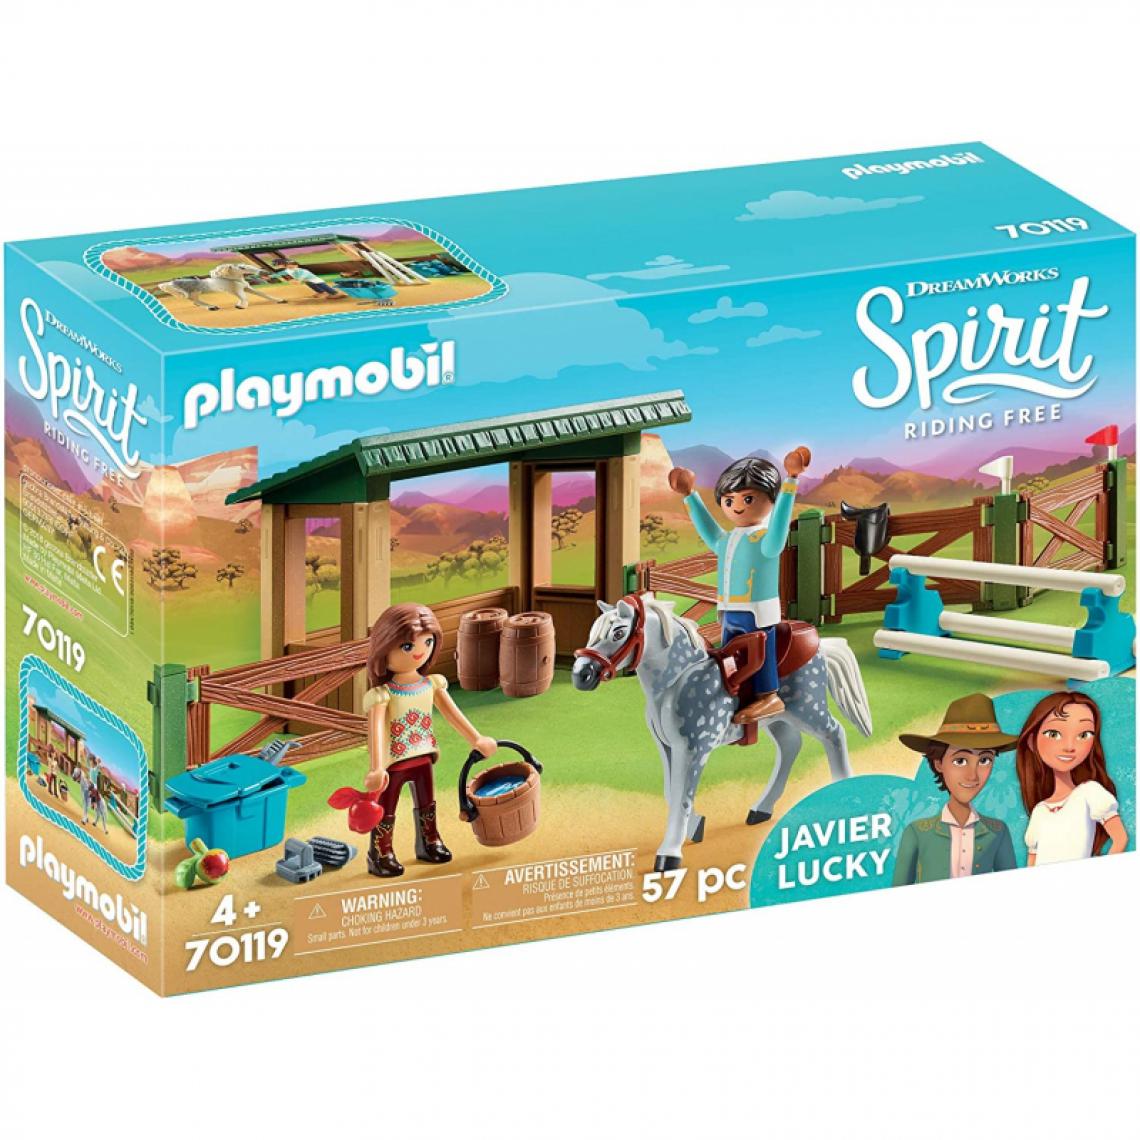 Playmobil - 70119 Playmobil Espace d'entrainement avec Lucky et Javier 0519 - Playmobil